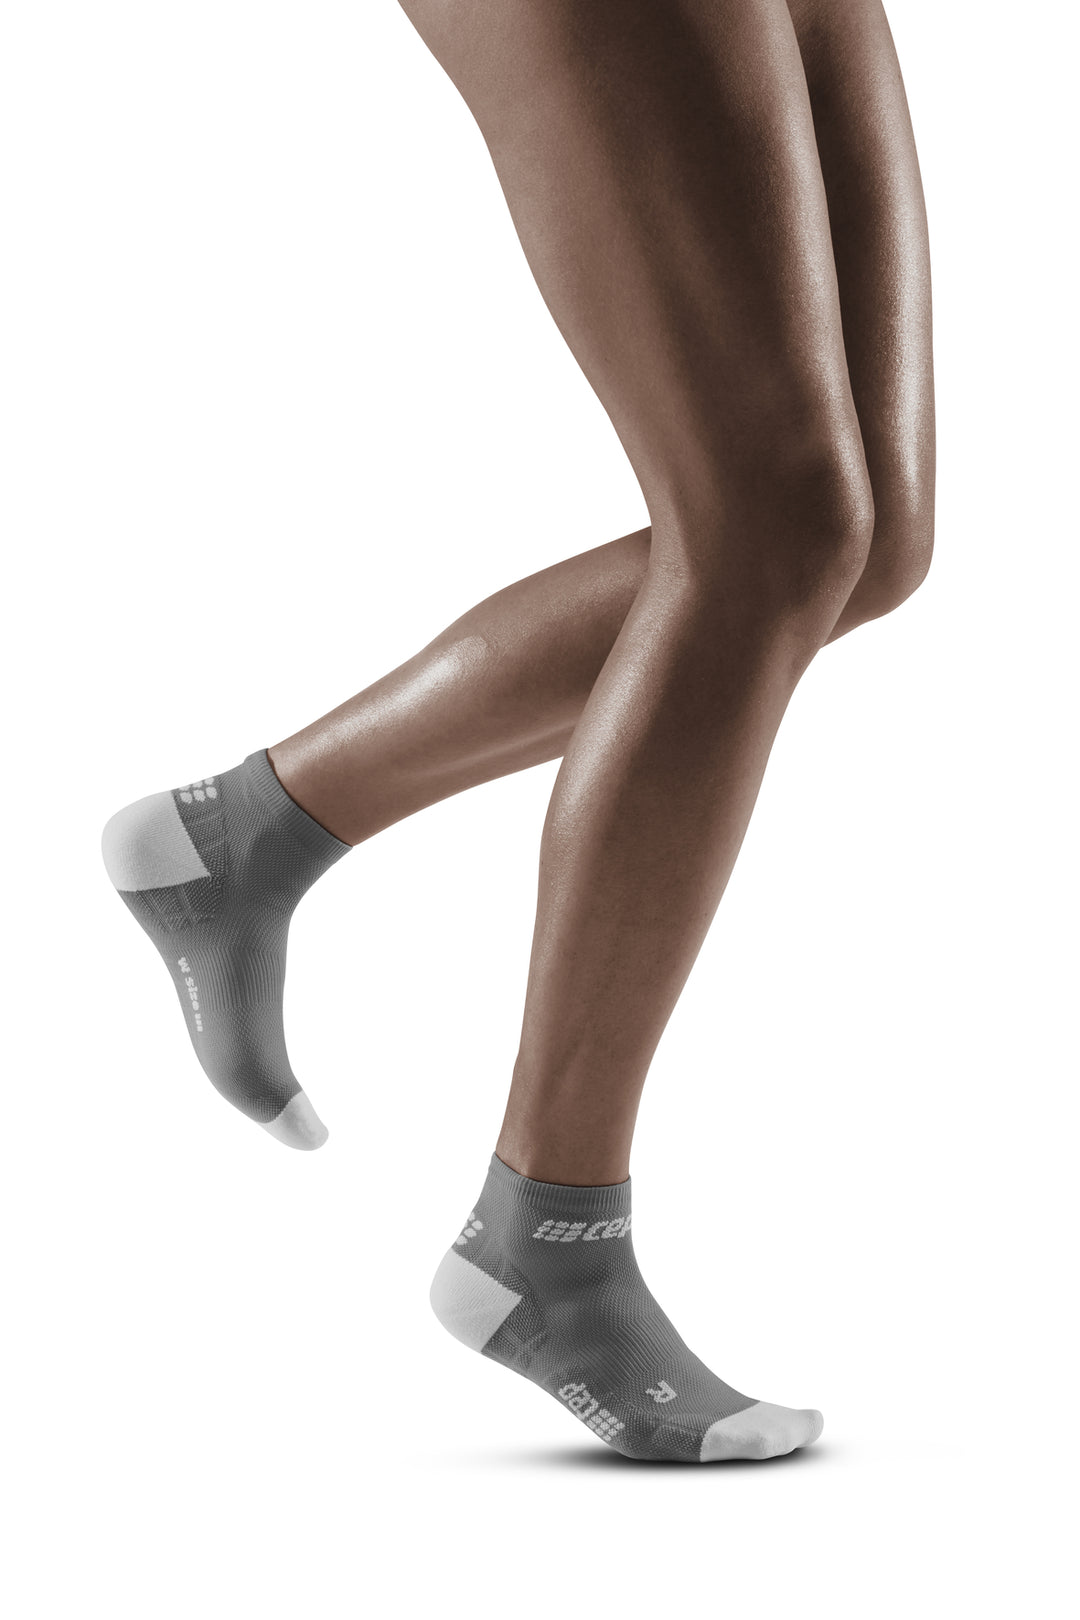 Calcetines de compresión ultraligeros de corte bajo, mujer, gris/gris claro